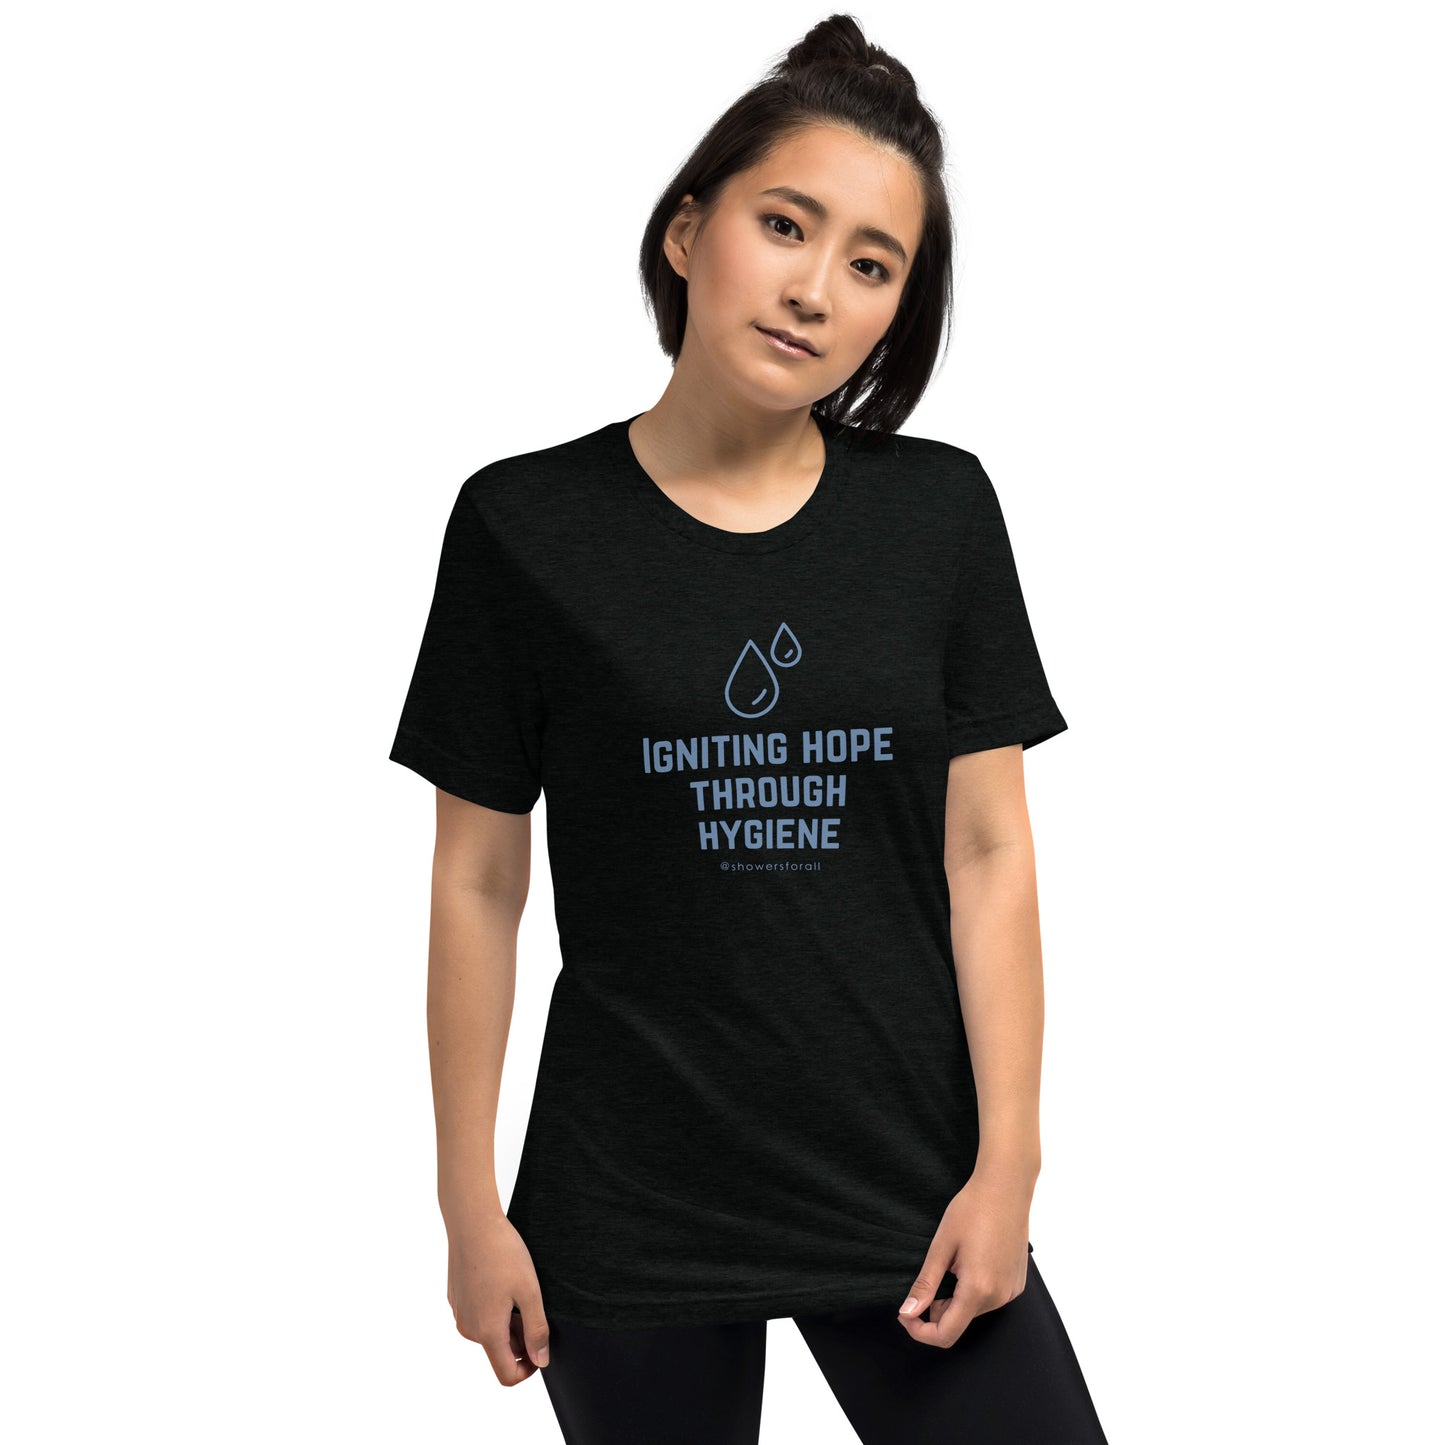 Hope Unisex T-Shirt